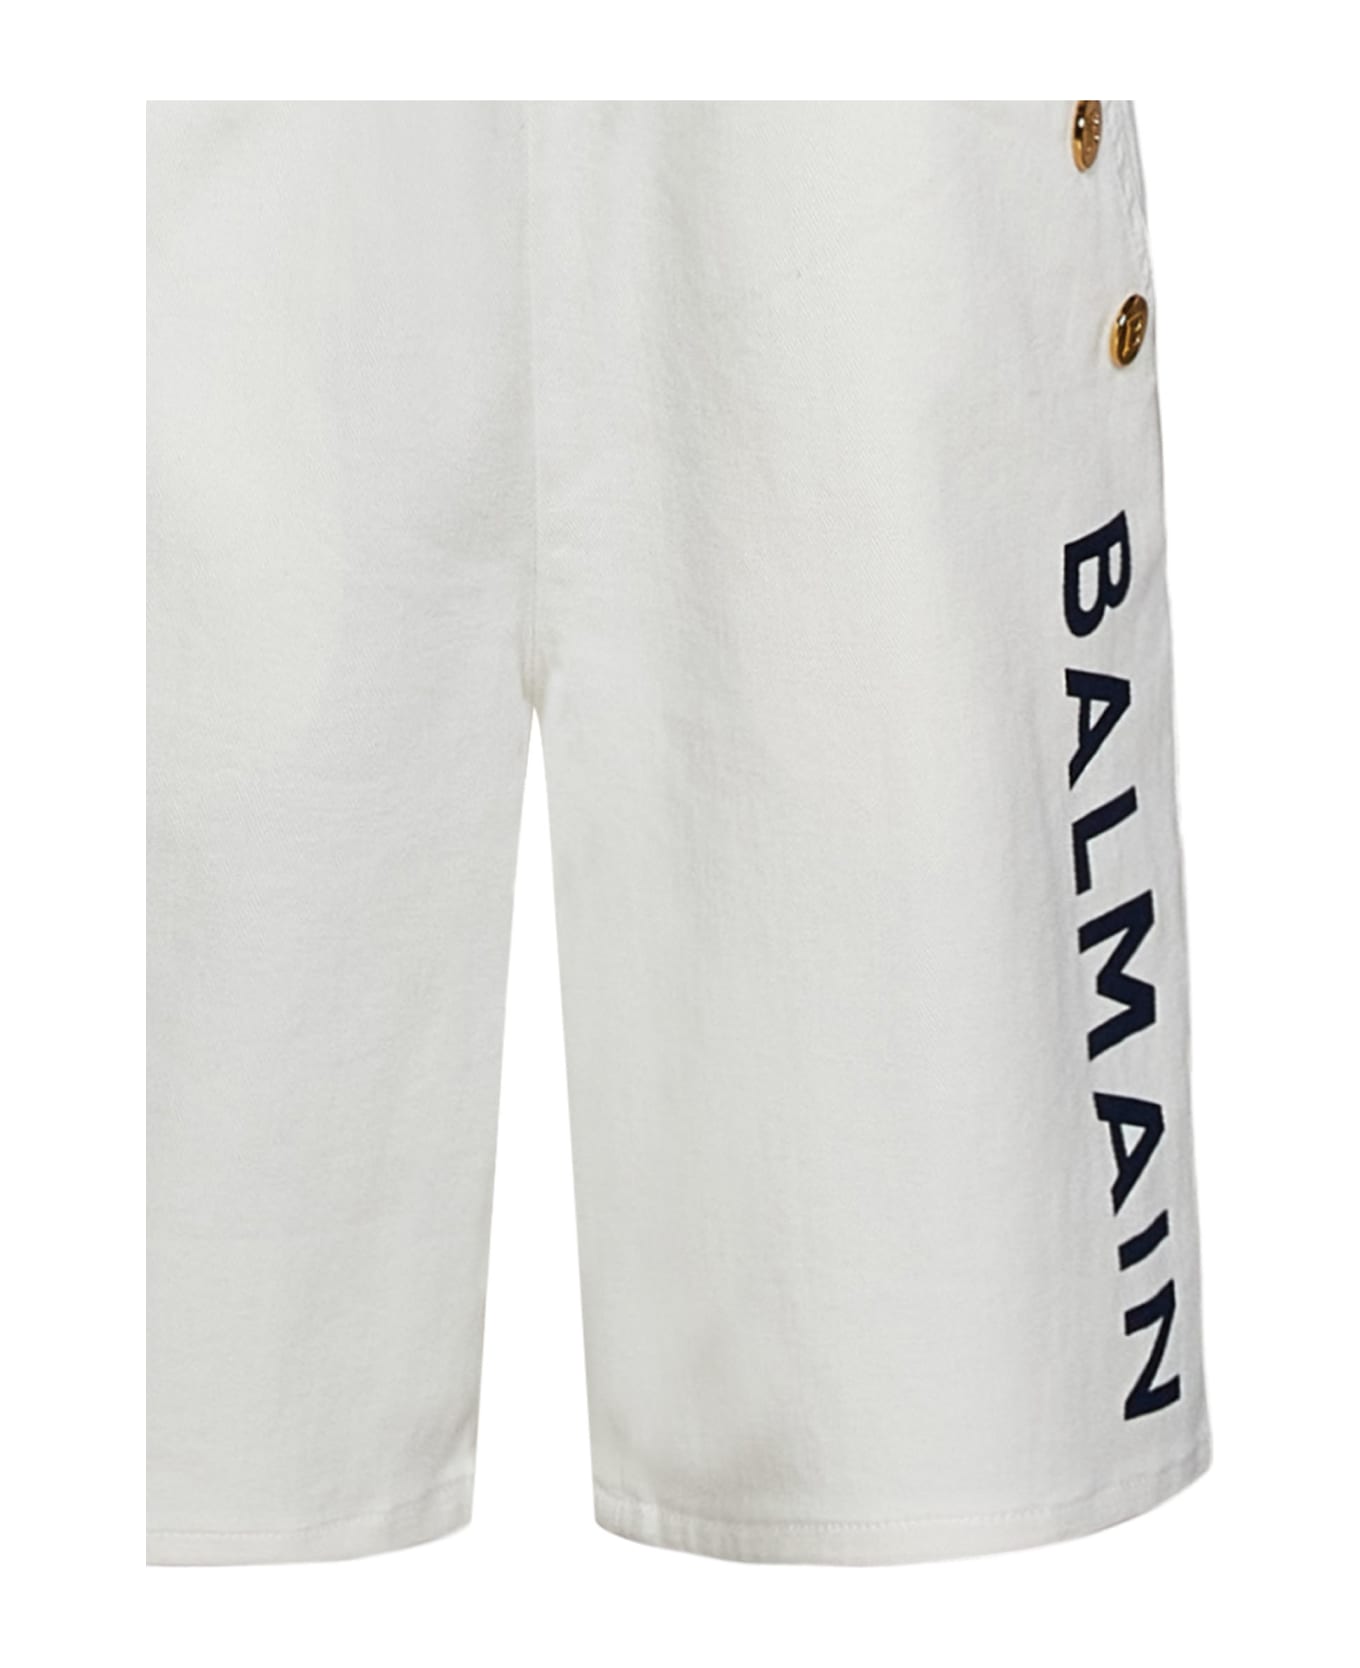 Balmain Shorts - WHITE ボトムス